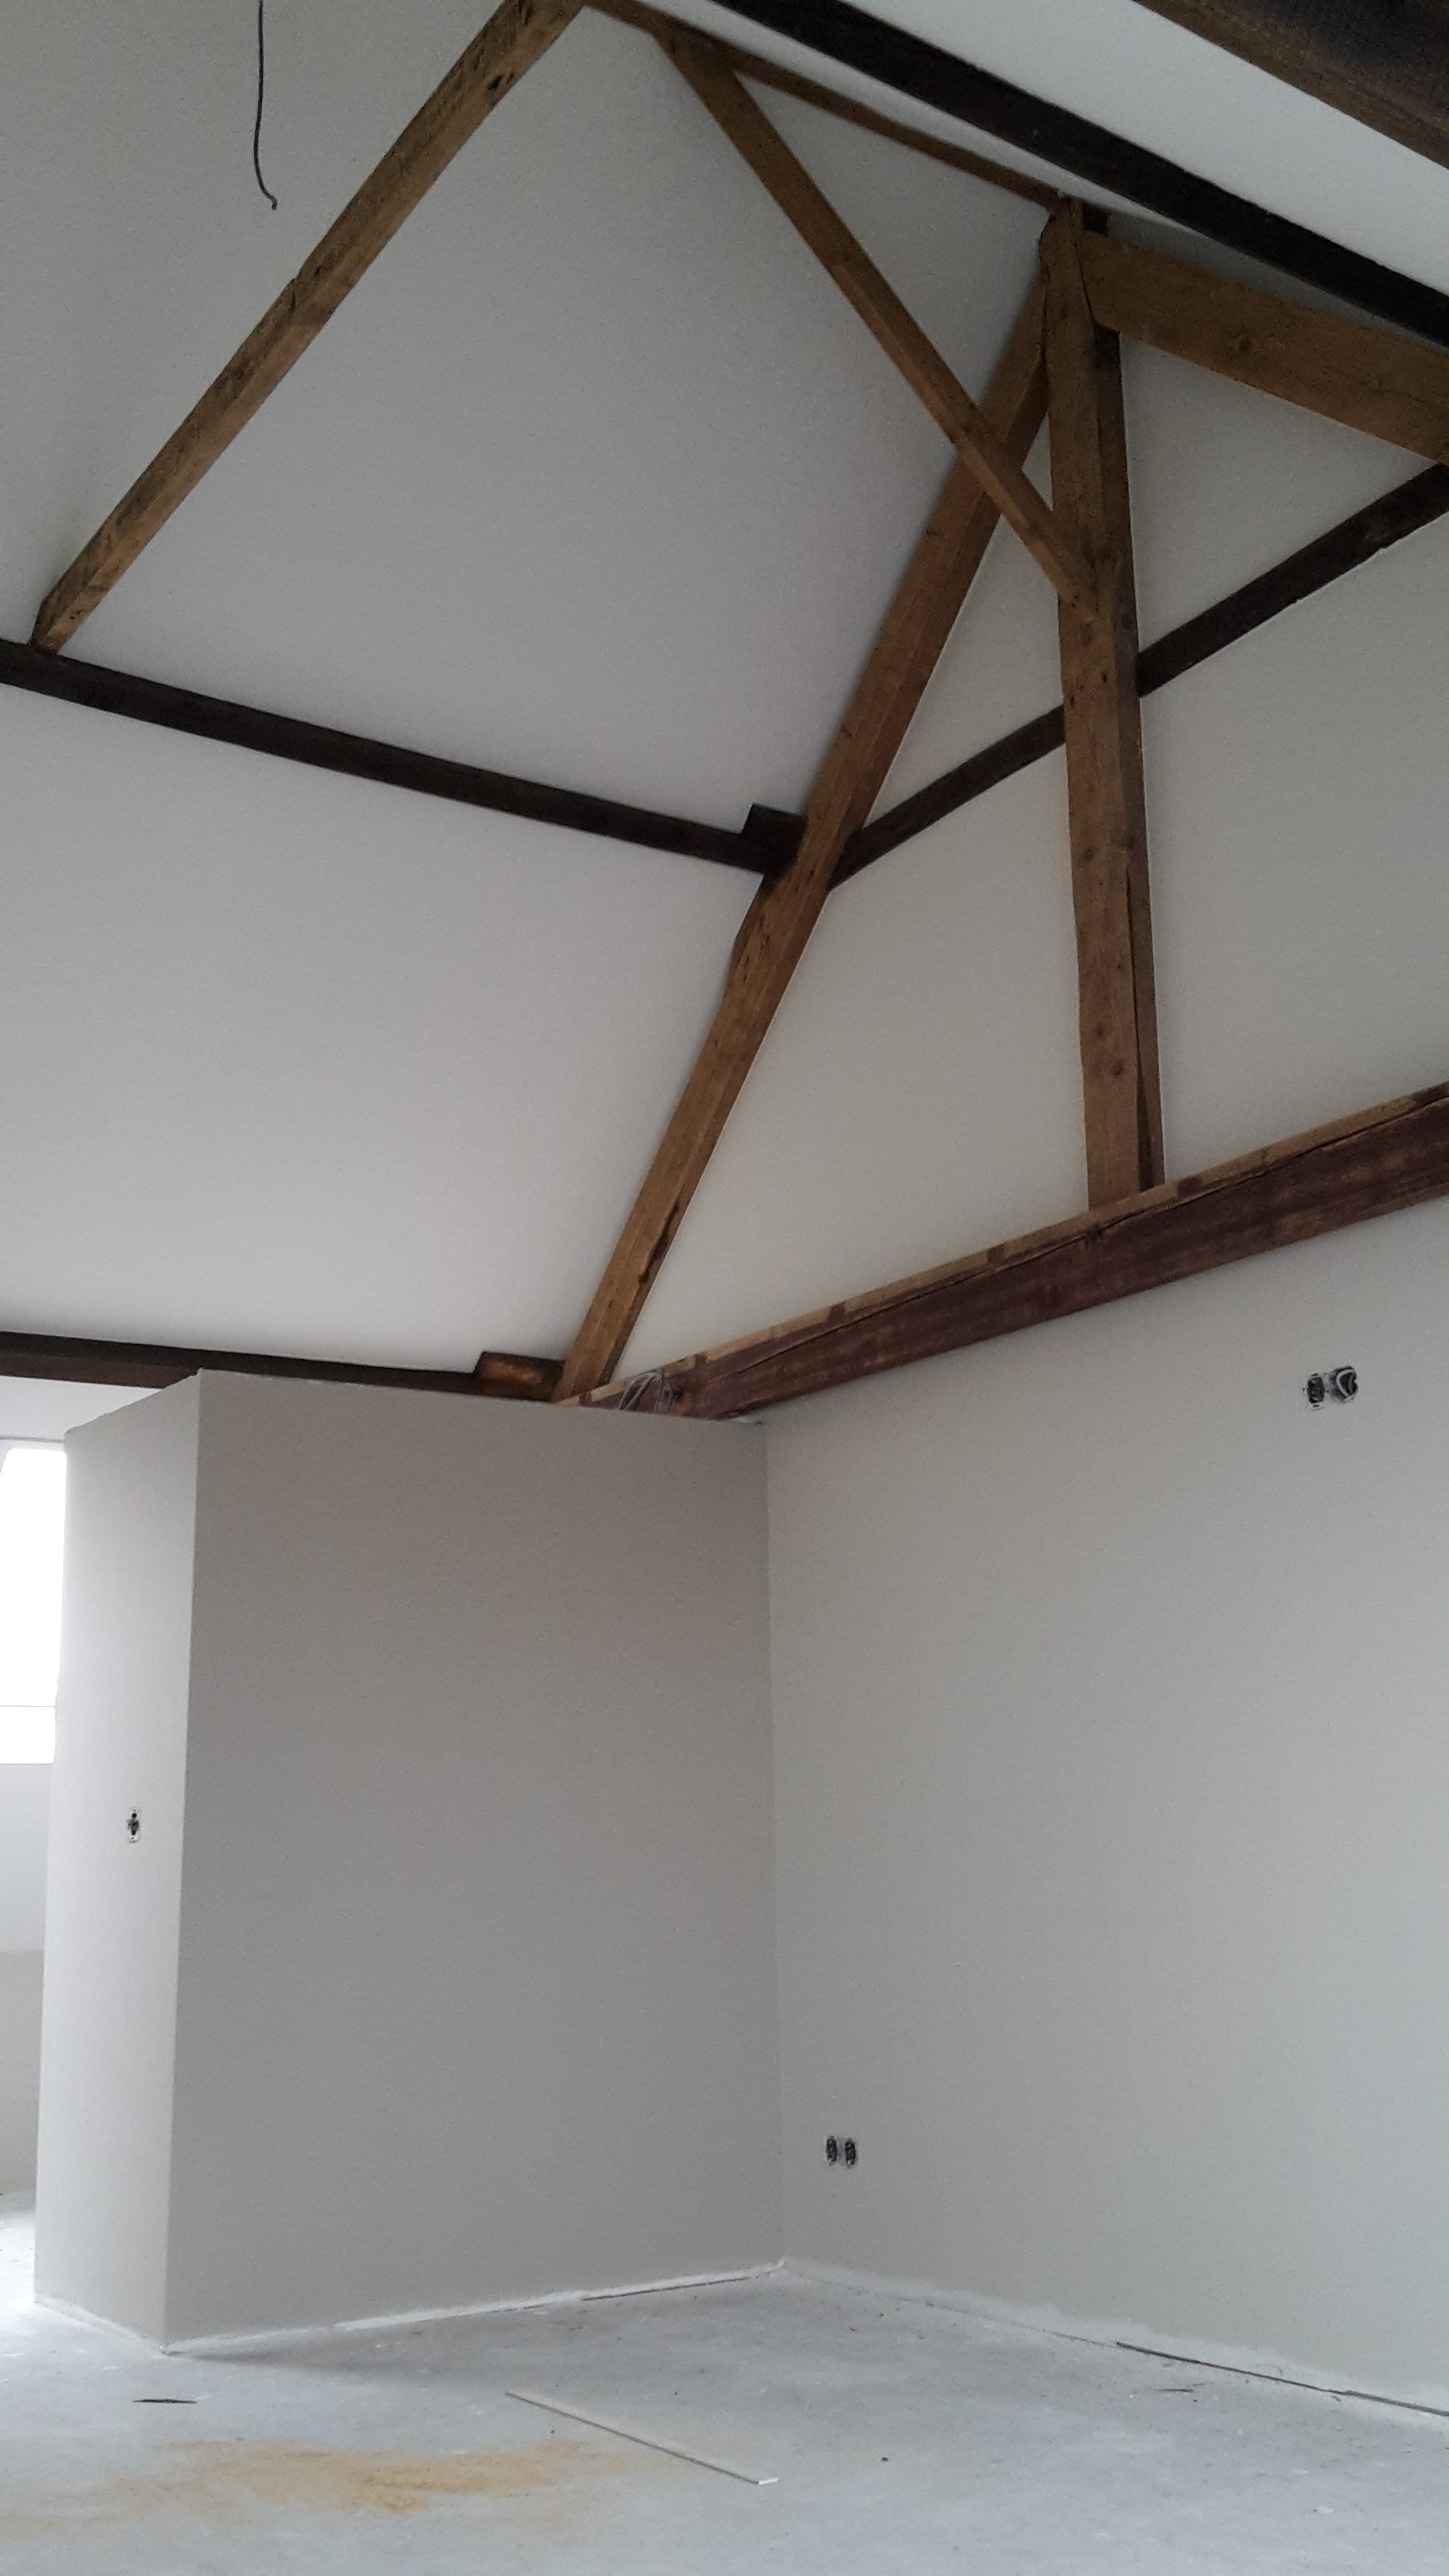 Slaapkamer met hoog plafond en mooie eiken balken (2)